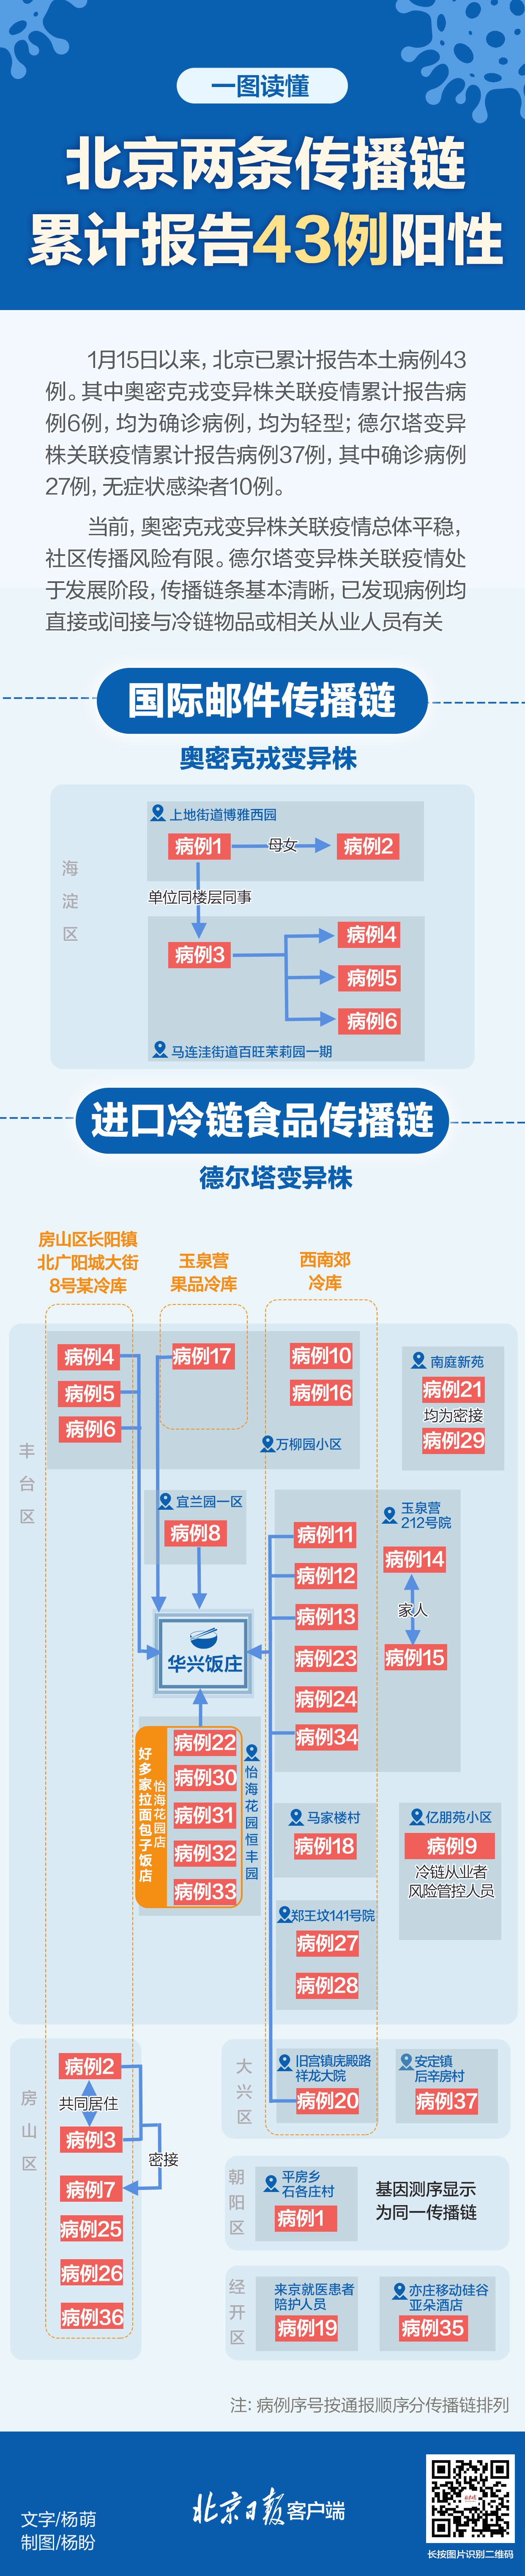 北京两条撒播链9天讲述43例阳性 病例关系一图读懂